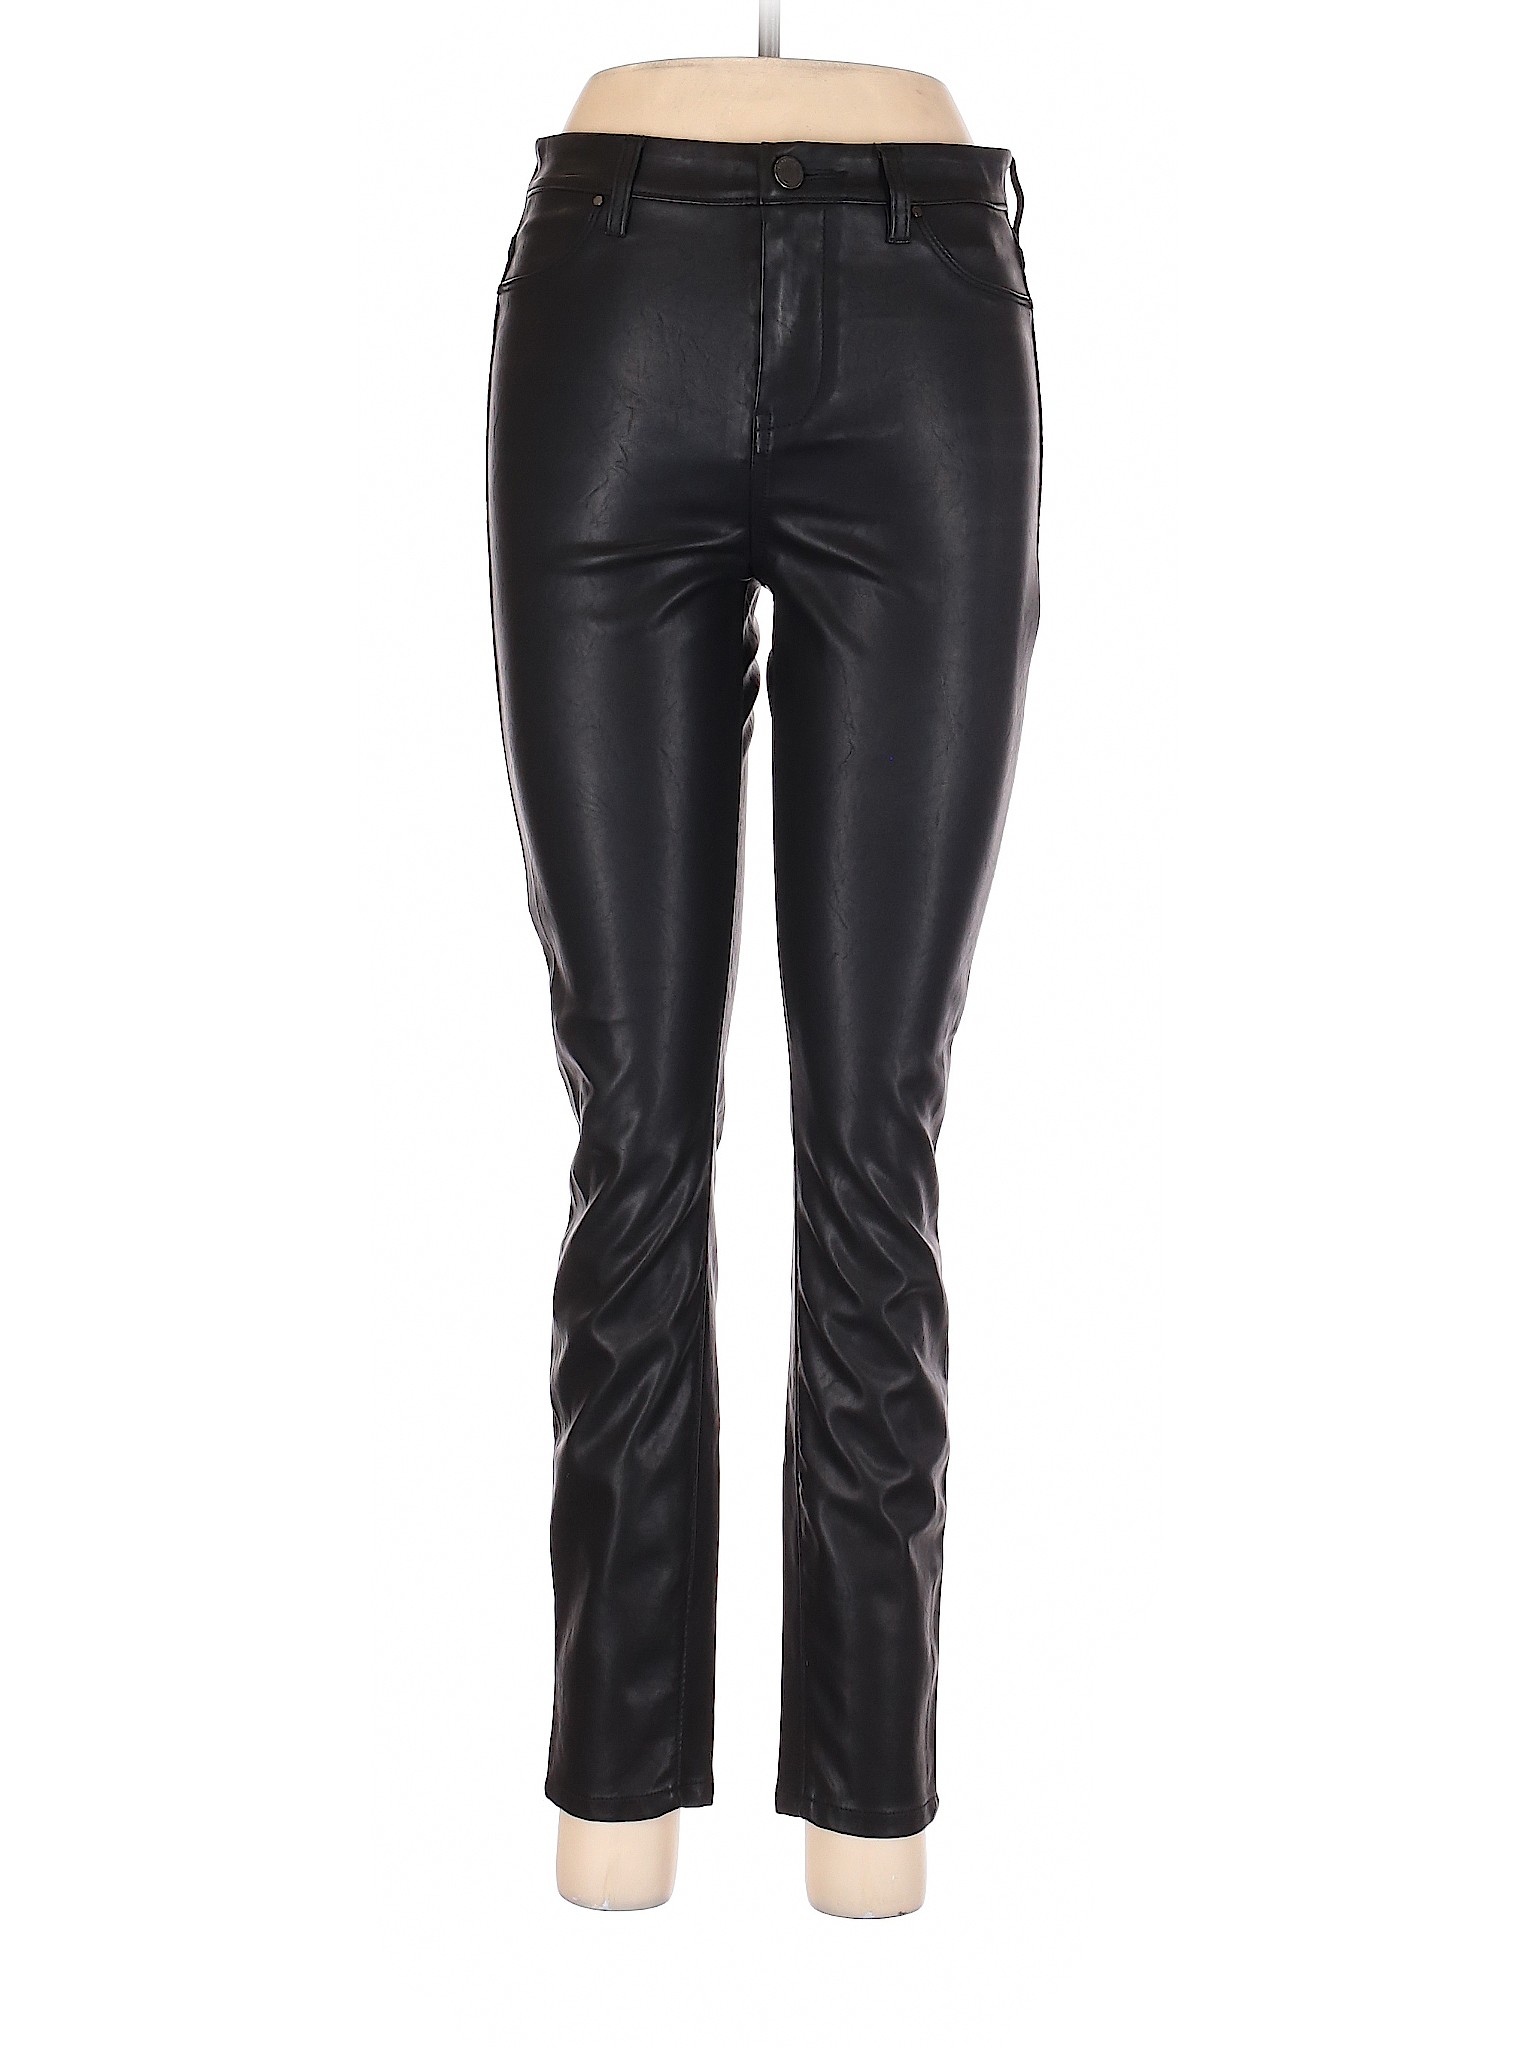 Blank NYC Women Black Faux Leather Pants 28W | eBay